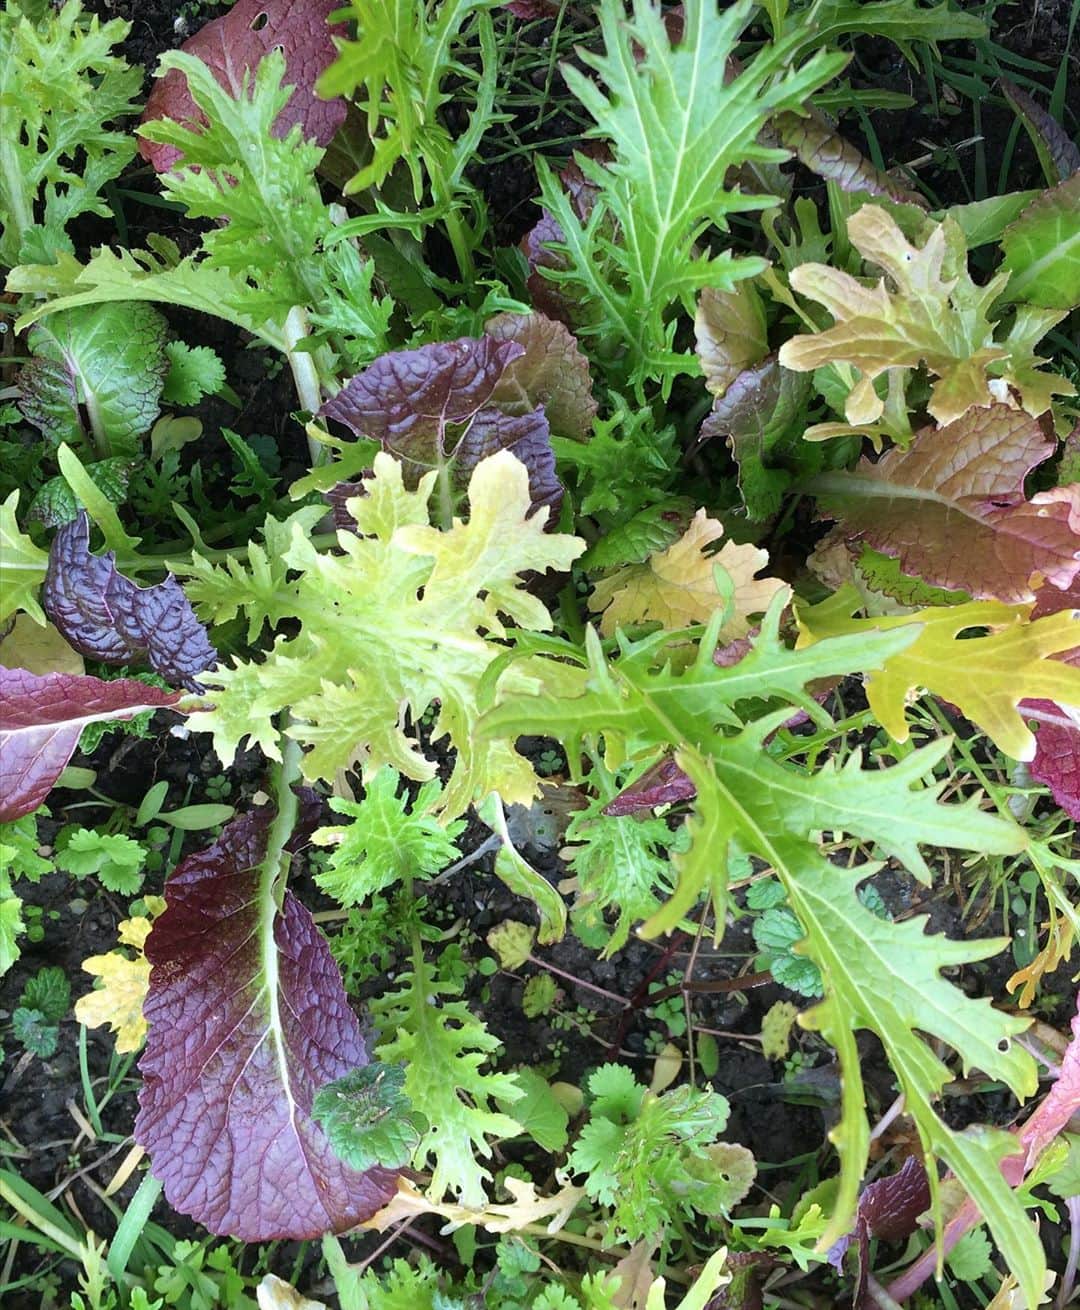 HERVA AKICOさんのインスタグラム写真 - (HERVA AKICOInstagram)「10/26月13時〜、19時〜 ハーブと葉野菜を育てて食べよう！WS  in 屋上テラス。 ・ ・ 1番好きな寄せ植えワークショップ。葉野菜が美味しくなるこれからの季節。自宅で育てて、摘み立てのハーブや野菜を楽しみませんか^ ^ ・ ・ #Repost @serendylabo with @make_repost ・・・ 🌿LESSON  秋のおすすめハーブと葉野菜の寄せ植え at 心白 -shinpaku-  植物がゆっくりじっくり育っていく秋から冬。 葉野菜が美味しくなり、また根もしっかり育つため、丈夫なハーブが育つ頃です。 　 今回はハーブと葉物野菜をミックスした5種の寄せ植えをレクチャー、屋上テラスで作業をします。 もちろん、育て方のポイントや食べ方、使い方の提案も。 ・ ・ ▶寄せ植え候補 無農薬 ・タイム ・パセリ ・ケール ・ルッコラ ・ディル ・スイスチャード　　  などの寄せ植え を予定しています。 ※注）生育状況により変更する可能性あり 　 鉢は、リサイクルペットボトルなどから作った軽くて、通気性のいい鉢ルーツポーチを使用。通気性が良いので、根がしっかりと育つので植物が元気に育ちます。 ・ ・ オープンエア―の眺めの良い空間で、風を感じながら園芸を楽しみ、ご自宅で摘みたてのハーブや葉野菜を味わいましょう。 　 レッスン後は、HERVAお手製のマフィンと、ハーブティーの振る舞い付き。（持ち帰りも可） よく頑張ったご褒美にどうぞ◎ 　 　   開催場所の衛生ケア  ★講師とスタッフの検温・こまめな手指消毒・マスクの着用をして実施します。 ★店内は広く(56平米)、窓があり換気できる空間です。 ★定員は８名様とさせていただきます。 ★フィジカルディスタンスを保つ座席配置でおこないます。 ★レッスン中（飲食時以外）は全員マスク着用でおこないます。 ★飛沫感染対策ボードの用意がございます。 ★共同作業はいたしません。 ★ご参加者の受付時の検温・こまめな手指消毒にご協力いただきます。 ★当日体調が優れない方は無理にご参加なさらず、遠慮なくその旨をお知らせください。 　 　 ＜日時＞ 10月26日(月) 昼）13:00～15:00 夜）19:00～21:00 　 ＜受講料＞ 6,000円（税・材料費込み） ※ハーブ＆葉野菜の寄せ植えの持ち帰り ※マフィン＆ハーブティーの振る舞い付き 　 ＜持ち物＞ ・筆記用具 ・軍手 　※手指や爪への汚れが気になる方（手洗いスペースはあります） ・エプロン 　※服への汚れが気になる方 　 ＜講師＞ herb&spice HERVA 明子 　@agf.herva  ■ ハーバルセラピスト ■ ハーブ料理研究家 ■ ハーブ教室 HERVA（ハーヴァ）主宰 アロマセラピスト、アロマ・ハーブの販売、園芸店勤務などを経て、海外数カ所のハーブと野菜農園に滞在。育てたハーブなどを生活や食に取り入れて楽しむことの提案を得意とする。 　 ＜予約／参加方法＞ 下記の連絡先までご予約ください。 ※ご氏名・ご連絡先（携帯番号）をご明記ください 【予約／問合せ：sitemaster@serendylabo.jp】 　 ＜キャンセルポリシー＞ ご予約後のキャンセルはご遠慮ください。 10月19日(木)18:00以降のキャンセルは、キャンセル料70％（4,200円）が発生いたしますので予めご了承くださいませ。※ご予約完了後、コメントやご連絡なく無断キャンセルをされた場合もキャンセル料を頂戴いたします。 　 ＜開催場所＞  心白 -shinpaku-（寄せ植え時は屋上テラスへ移動） 〒550-0001 大阪府大阪市西区土佐堀1-1-30 b.NAKANOSHIMA 5階 TEL  06-6147-6307 ※大阪メトロ四つ橋線「肥後橋駅」３番出口から徒歩３分程です  #セレンディーラボ#セレンディラボ#カルチャースクール#大阪イベント#肥後橋#中之島#習い事#おけいこ#趣味#レッスン#学び#文化#日本酒#日本酒BAR#心白#日本酒BAR心白#屋上テラス#パーティ会場#ハーブ#寄せ植え#ハーブのある暮らし#自家菜園」9月24日 12時49分 - herva_akiko